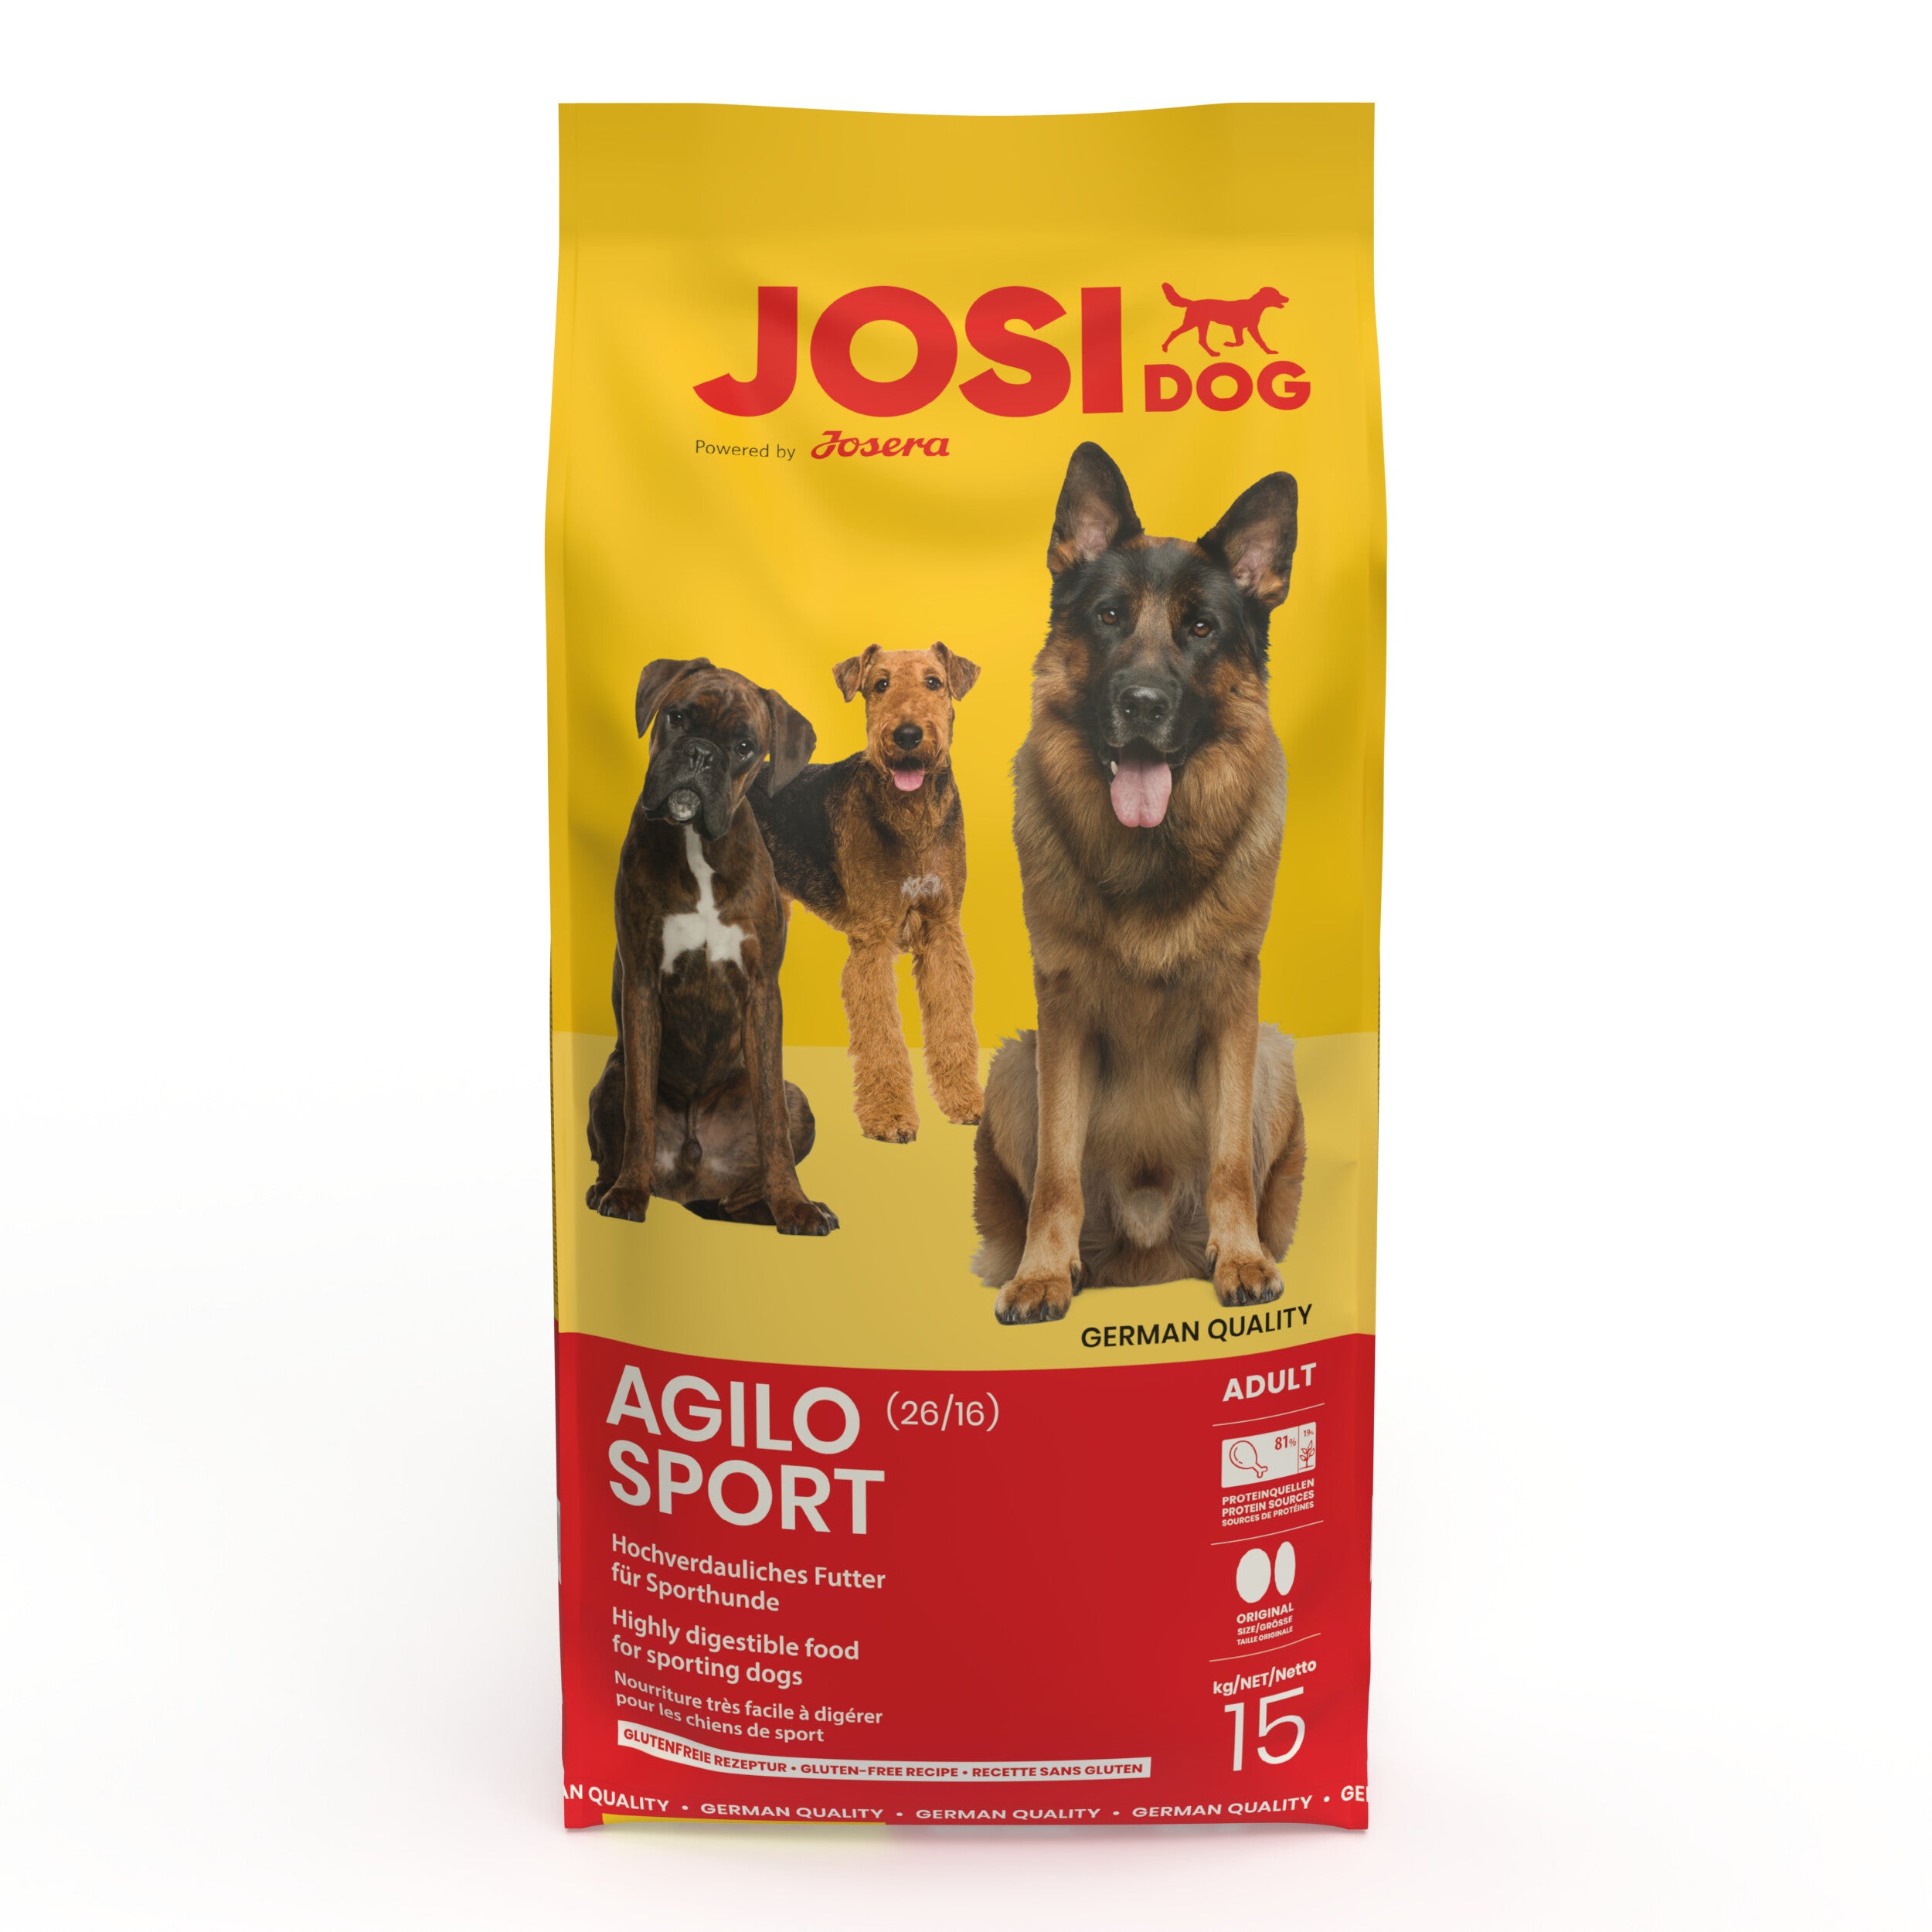 Artikel mit dem Namen JosiDog Agilo Sport im Shop von zoo.de , dem Onlineshop für nachhaltiges Hundefutter und Katzenfutter.